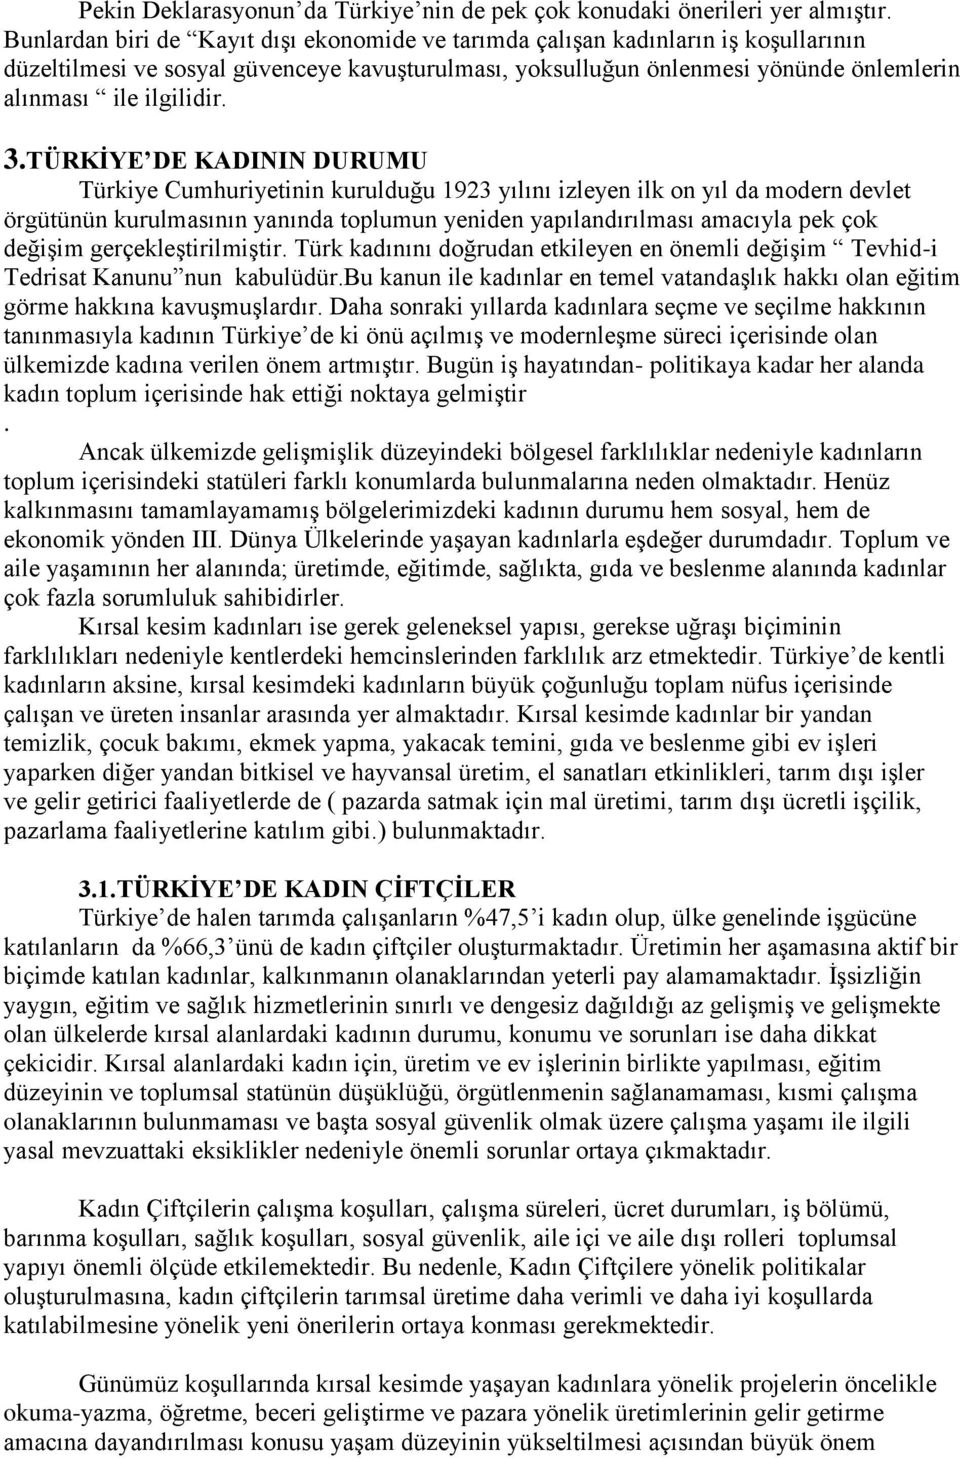 3.TÜRKİYE DE KADININ DURUMU Türkiye Cumhuriyetinin kurulduğu 1923 yılını izleyen ilk on yıl da modern devlet örgütünün kurulmasının yanında toplumun yeniden yapılandırılması amacıyla pek çok değişim